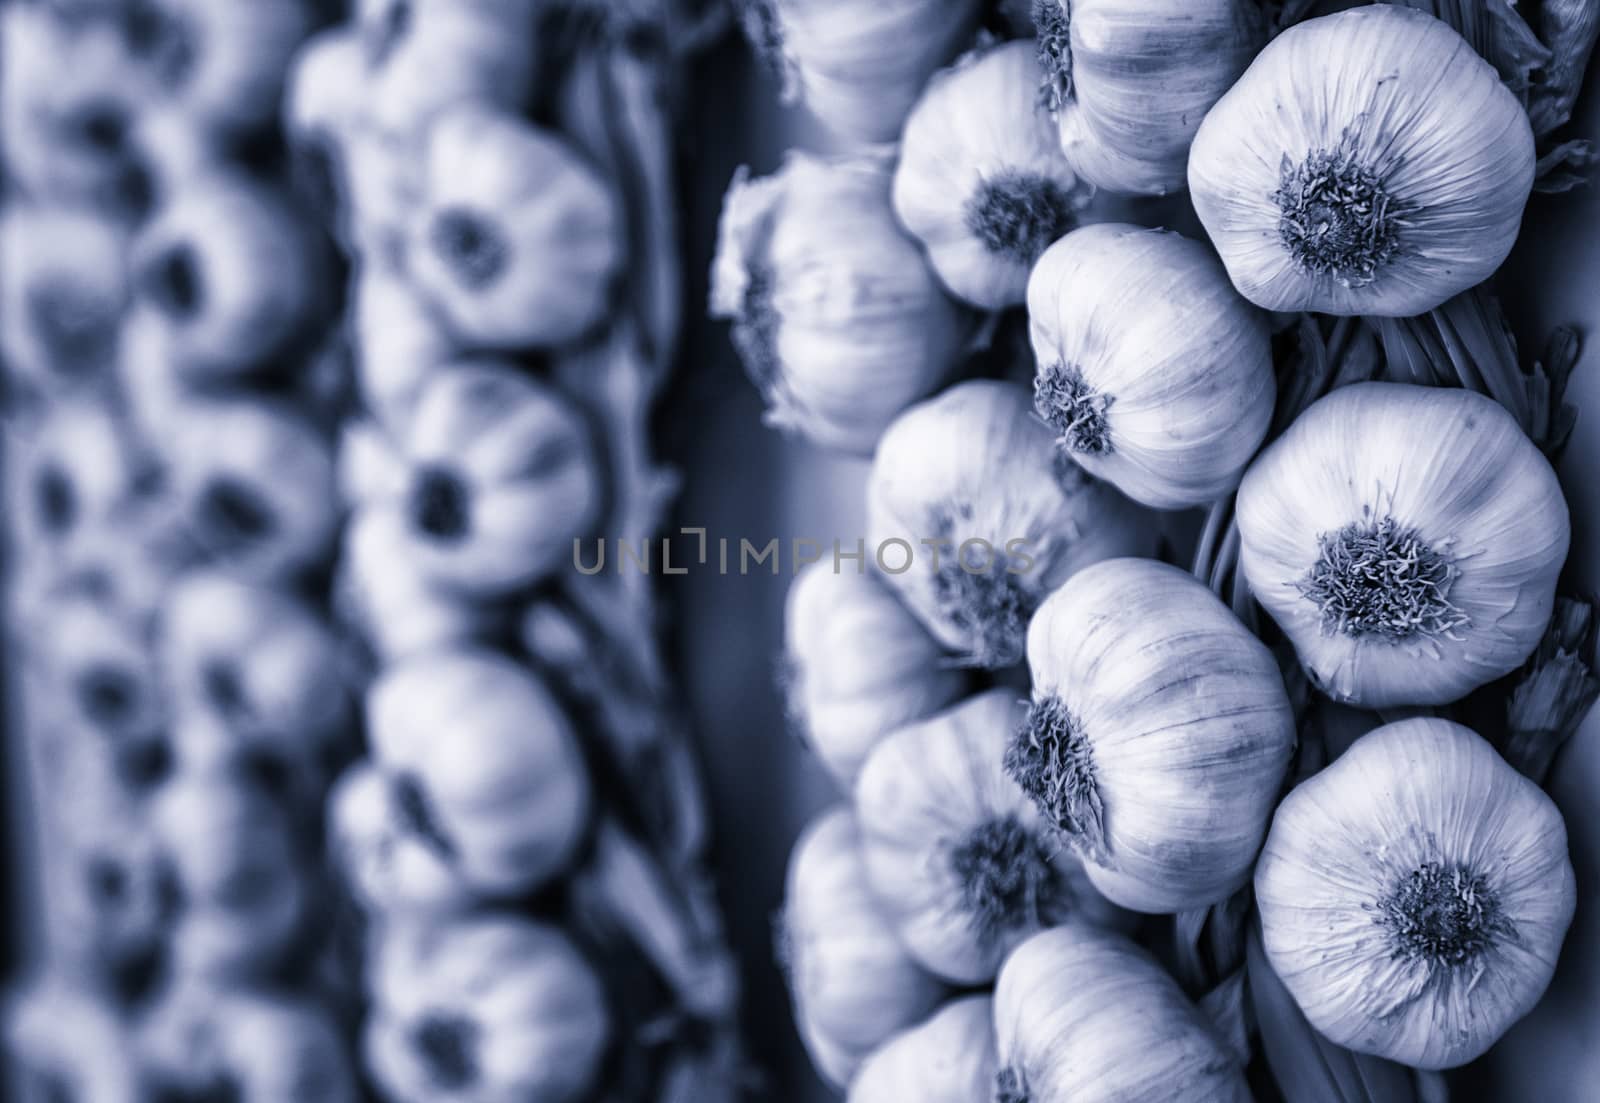 Harrow of garlic in a market by esebene